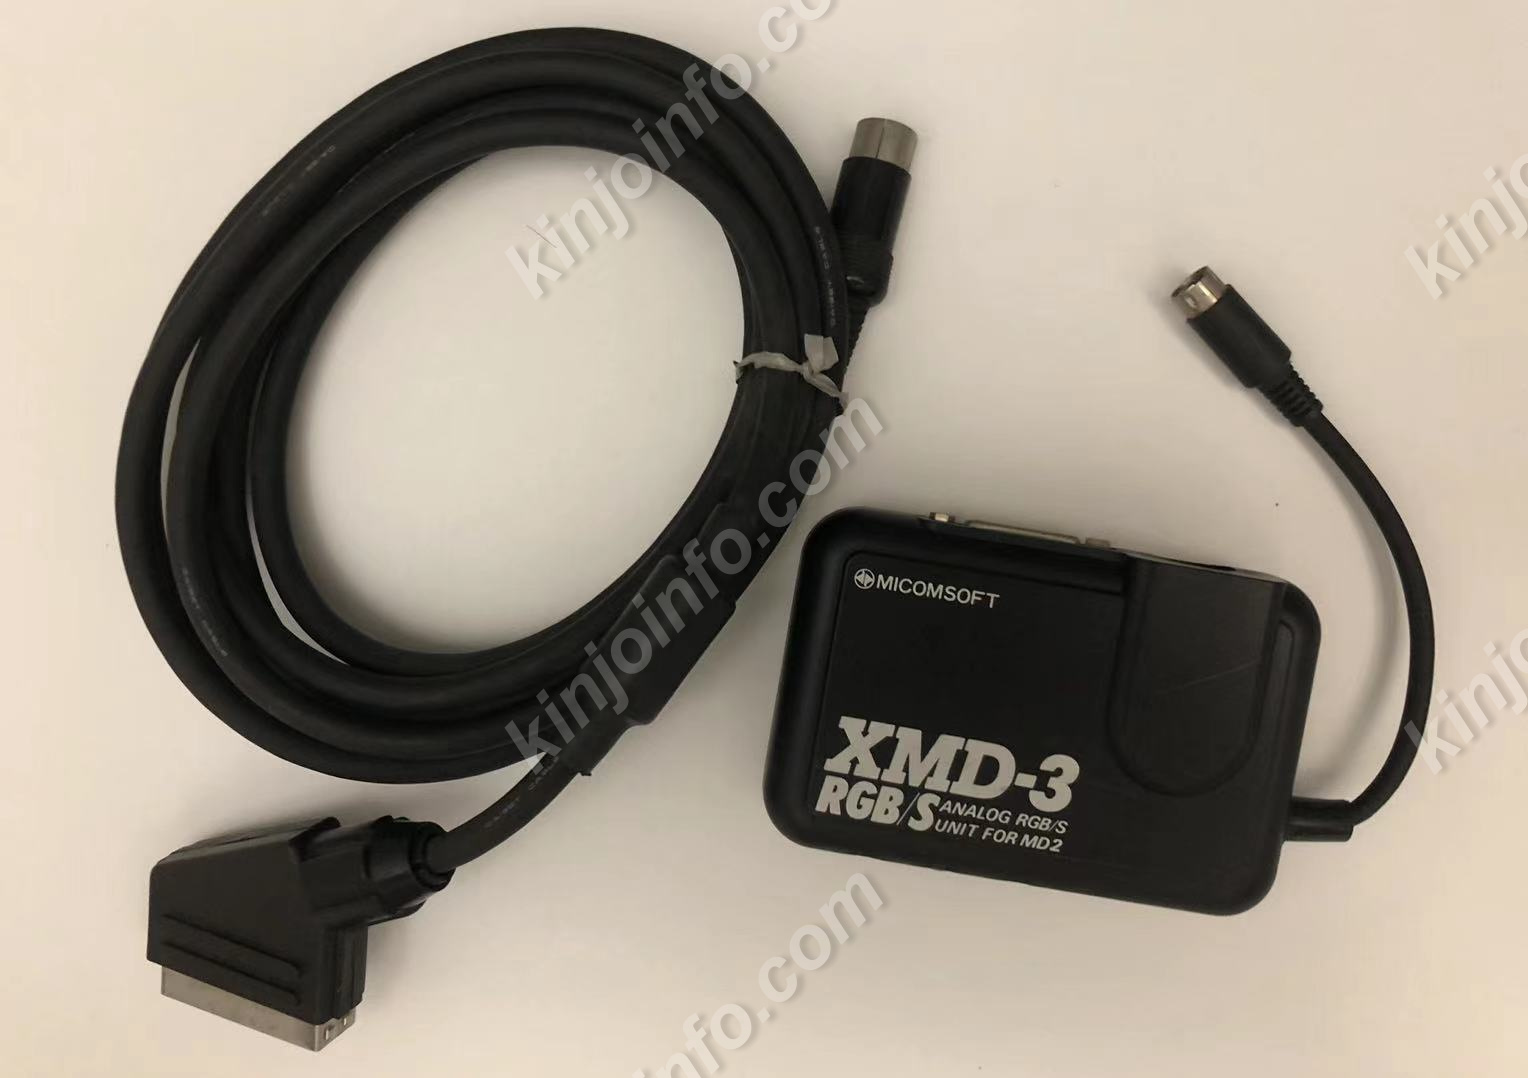 メガドライブ2用 アナログRGB/S端子 変換アダプター XMD-3 【中古】